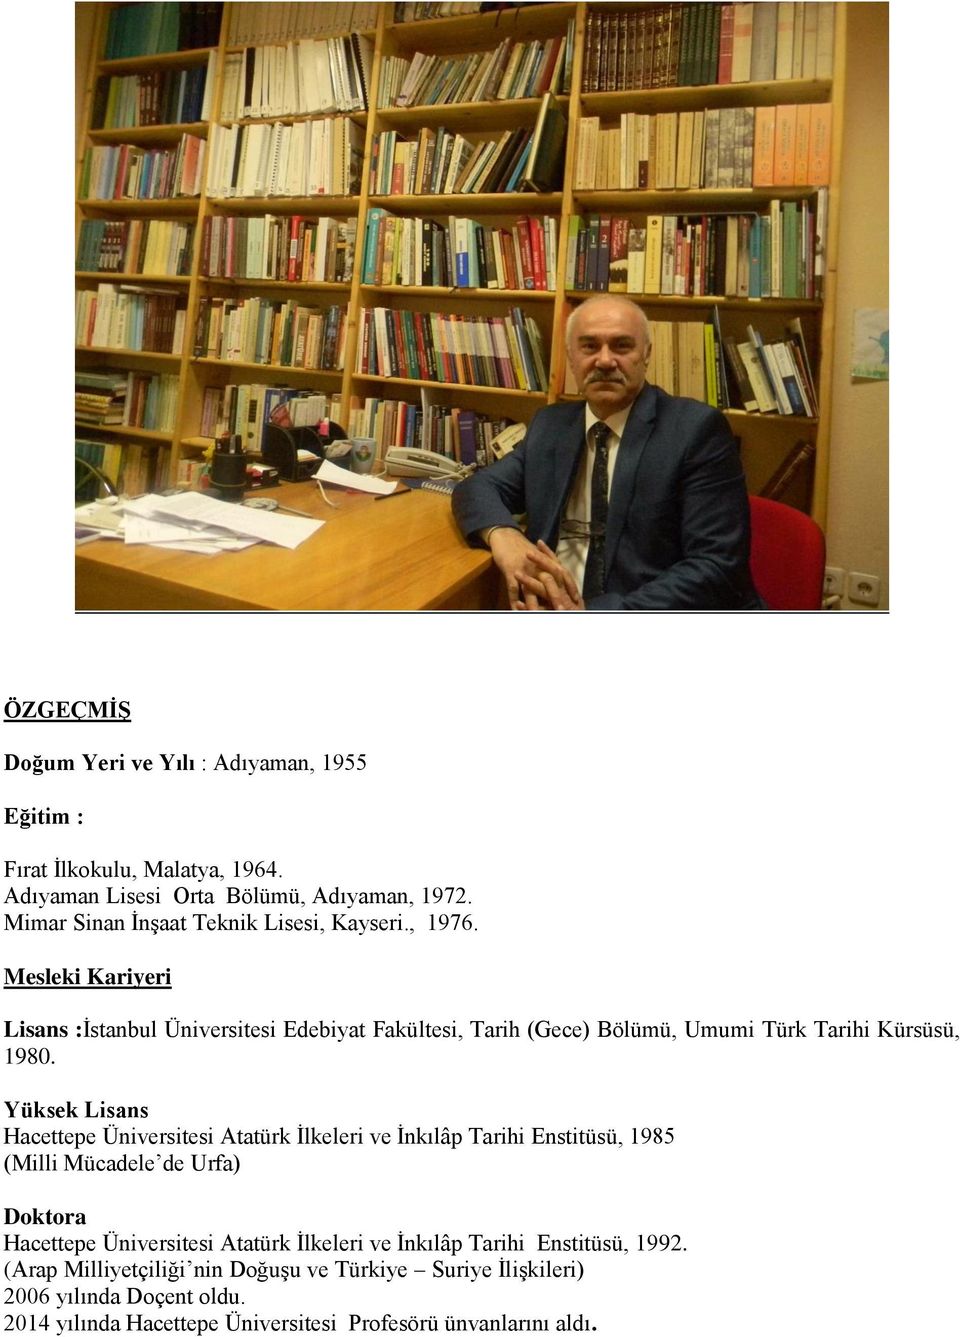 Mesleki Kariyeri Lisans :İstanbul Üniversitesi Edebiyat Fakültesi, Tarih (Gece) Bölümü, Umumi Türk Tarihi Kürsüsü, 1980.